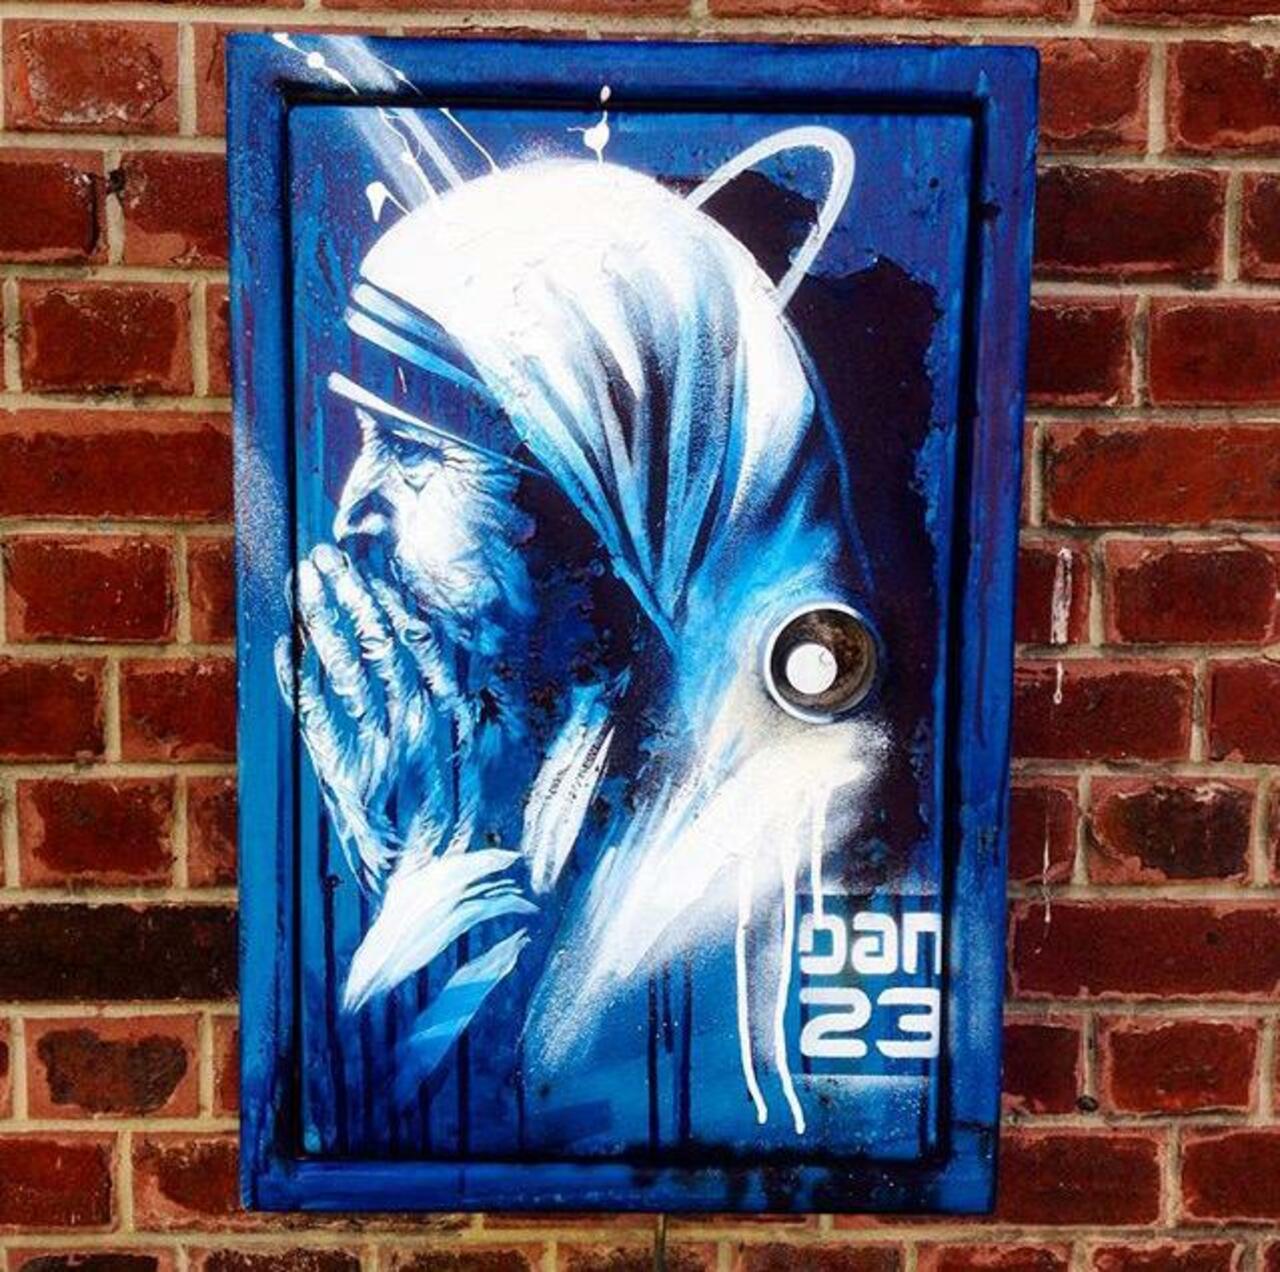 New Street Art 'Détail Spirit' by Dan23 

#art #graffiti #mural #streetart http://t.co/Ym8UlsvdMM